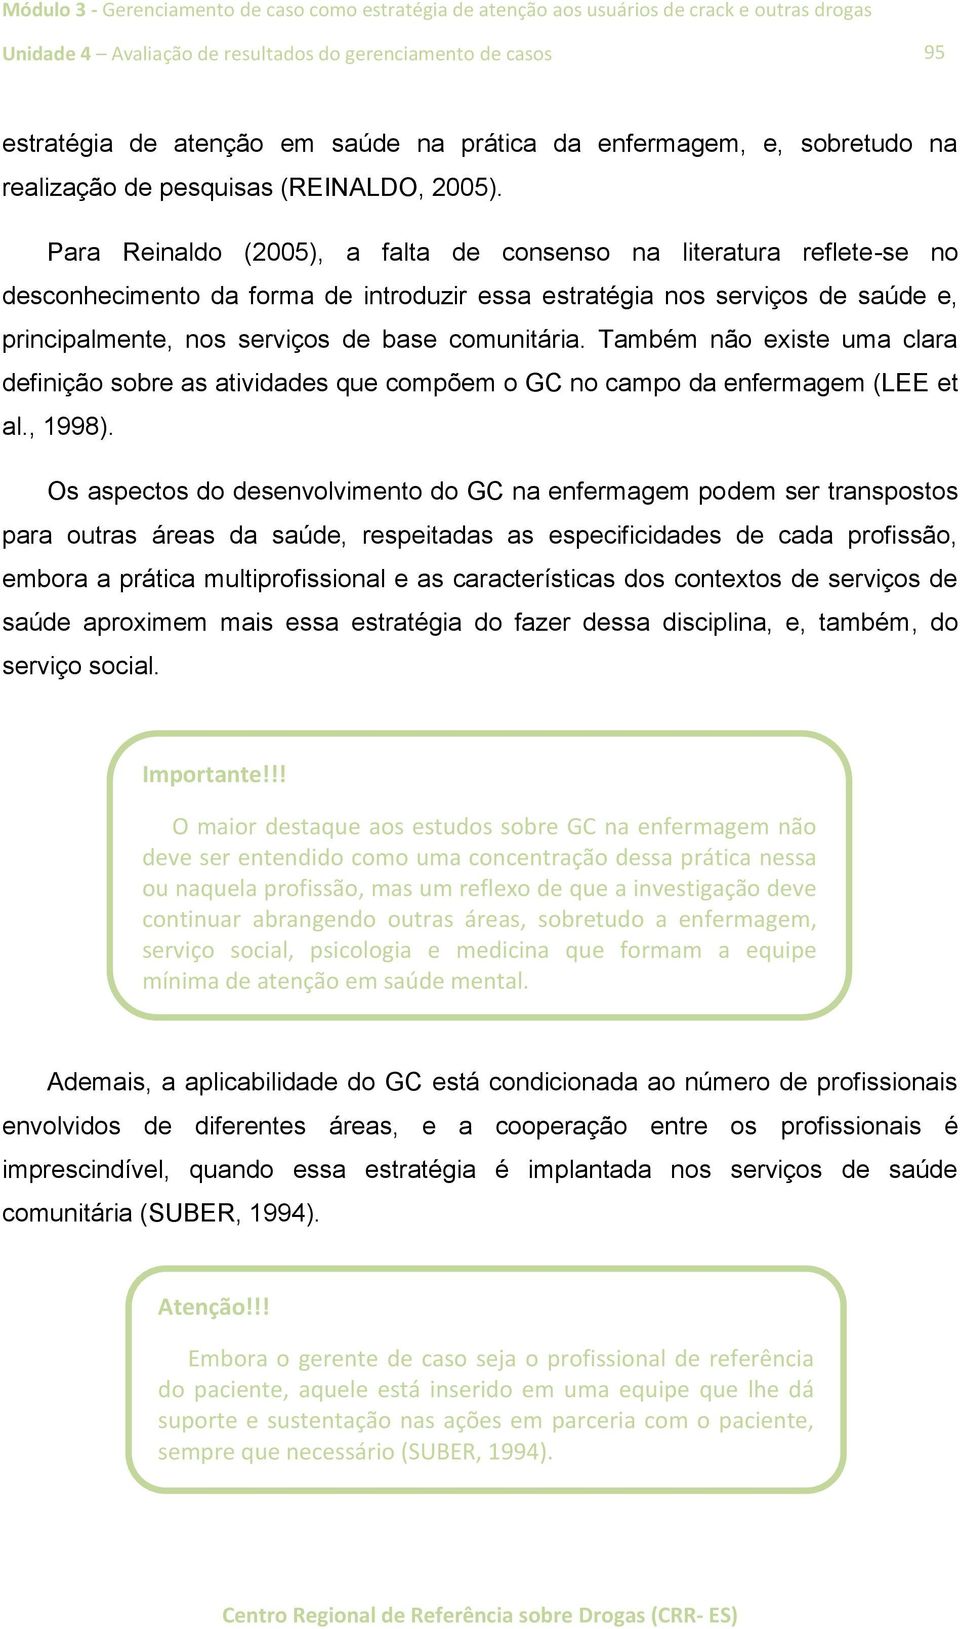 Para Reinaldo (2005), a falta de consenso na literatura reflete-se no desconhecimento da forma de introduzir essa estratégia nos serviços de saúde e, principalmente, nos serviços de base comunitária.